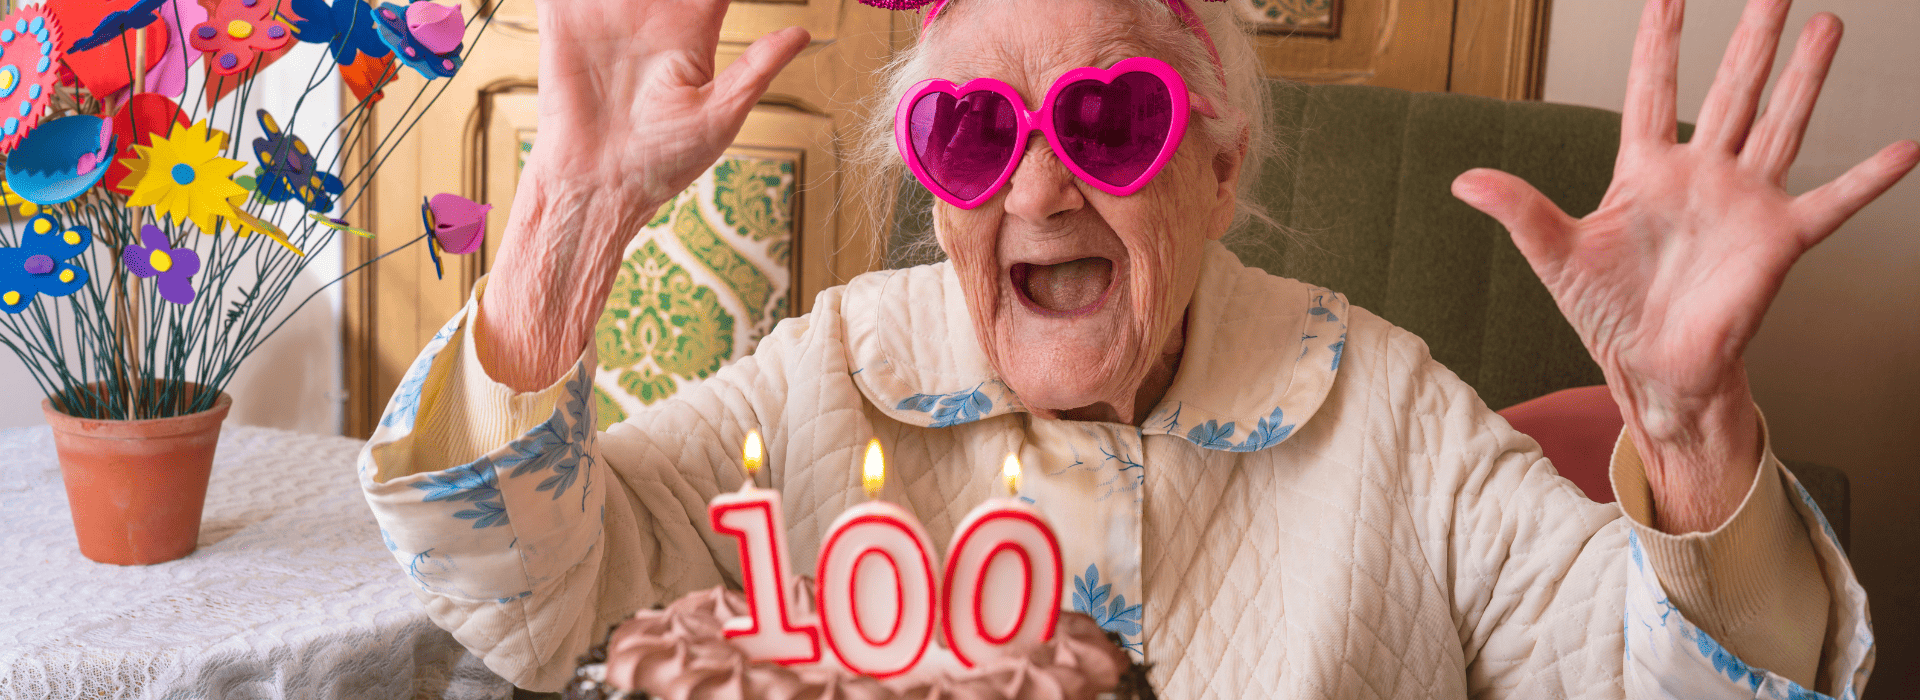 souhaiter un joyeux anniversaire 100ans